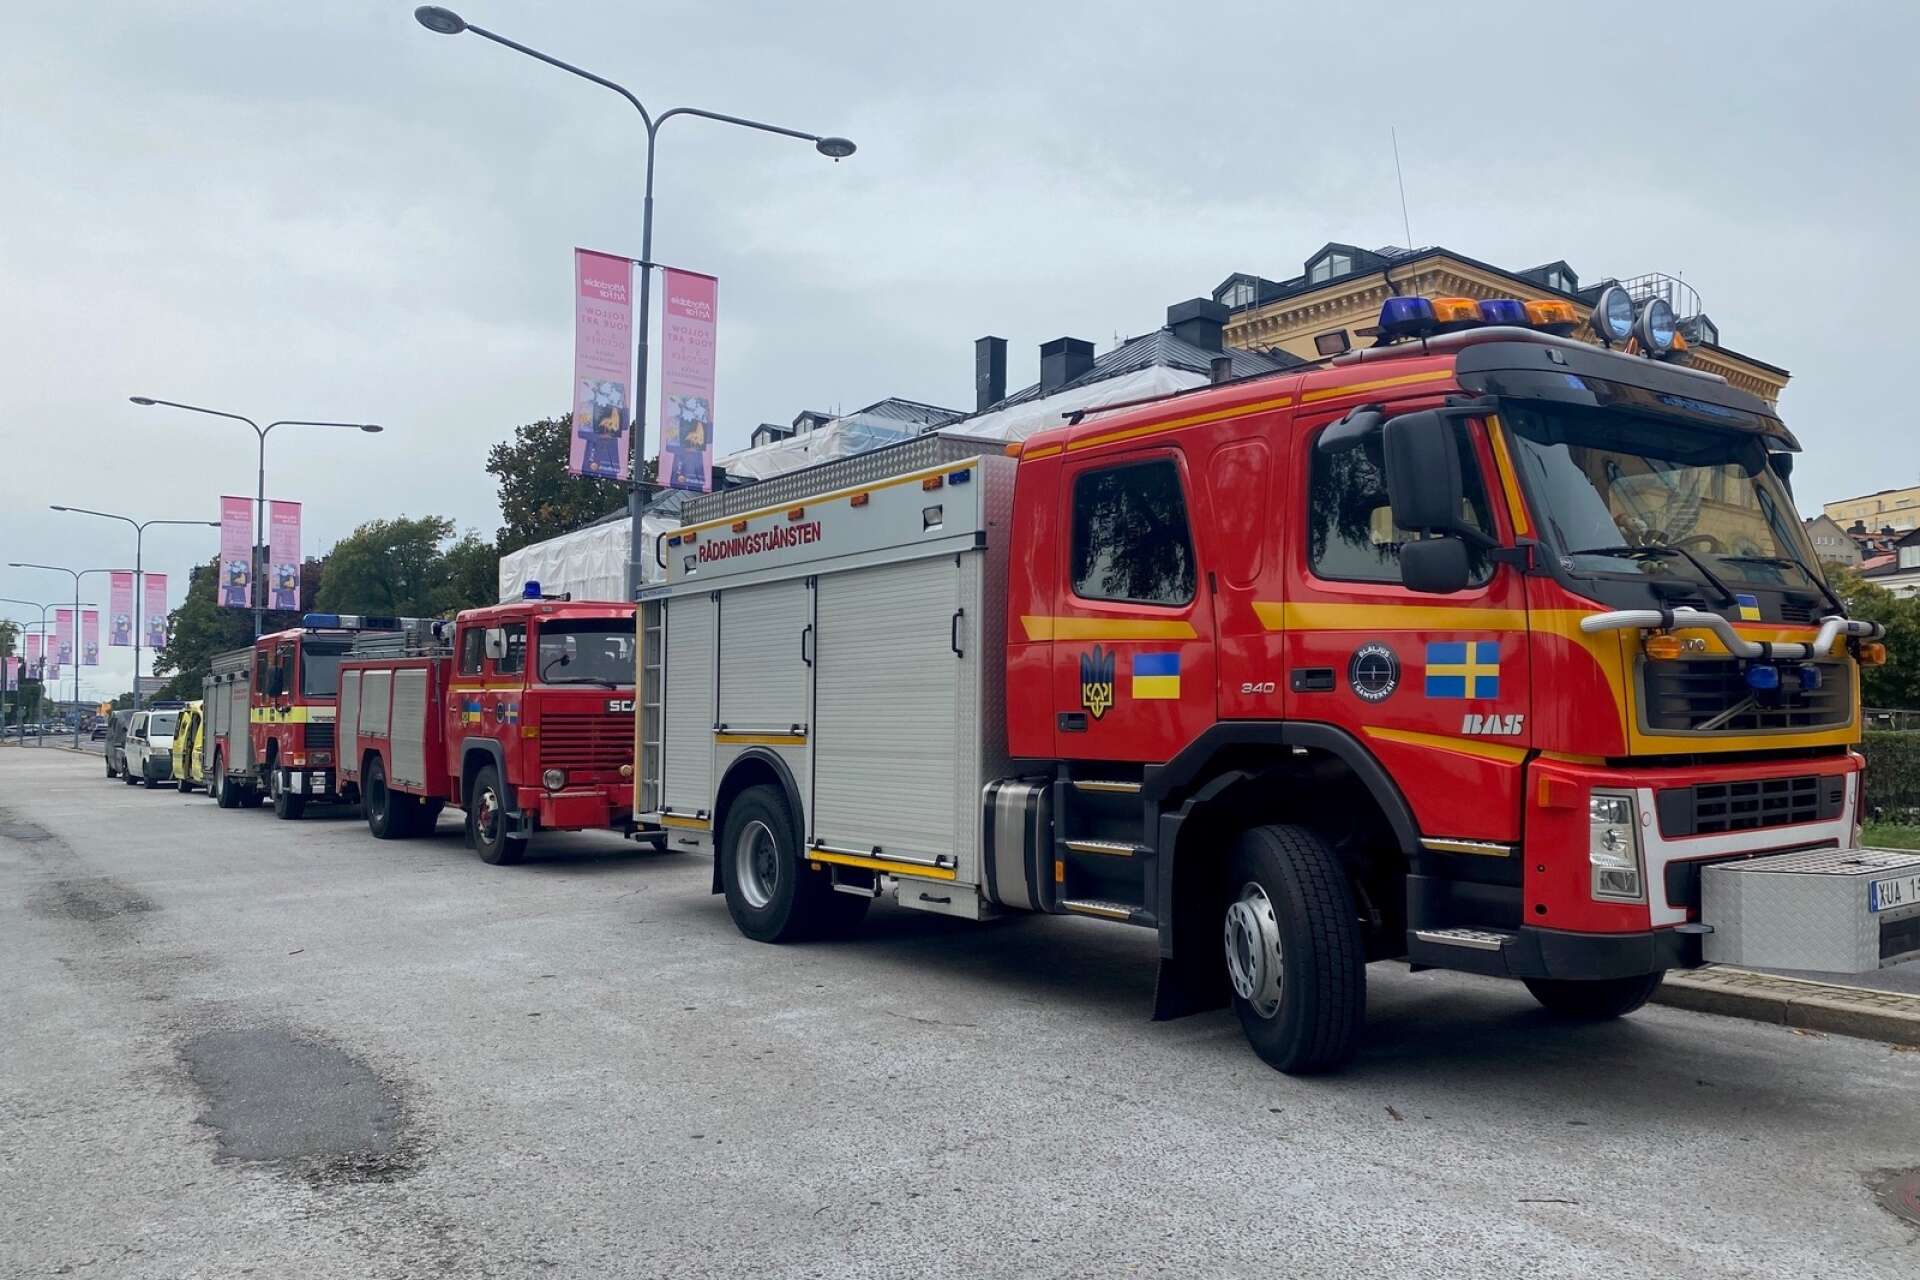 Totalt sex olika räddningsfordon transporterades från Sverige till Ukraina där de överlämnades till olika kommuner. I täten syns brandbilen från Bengtsfors.